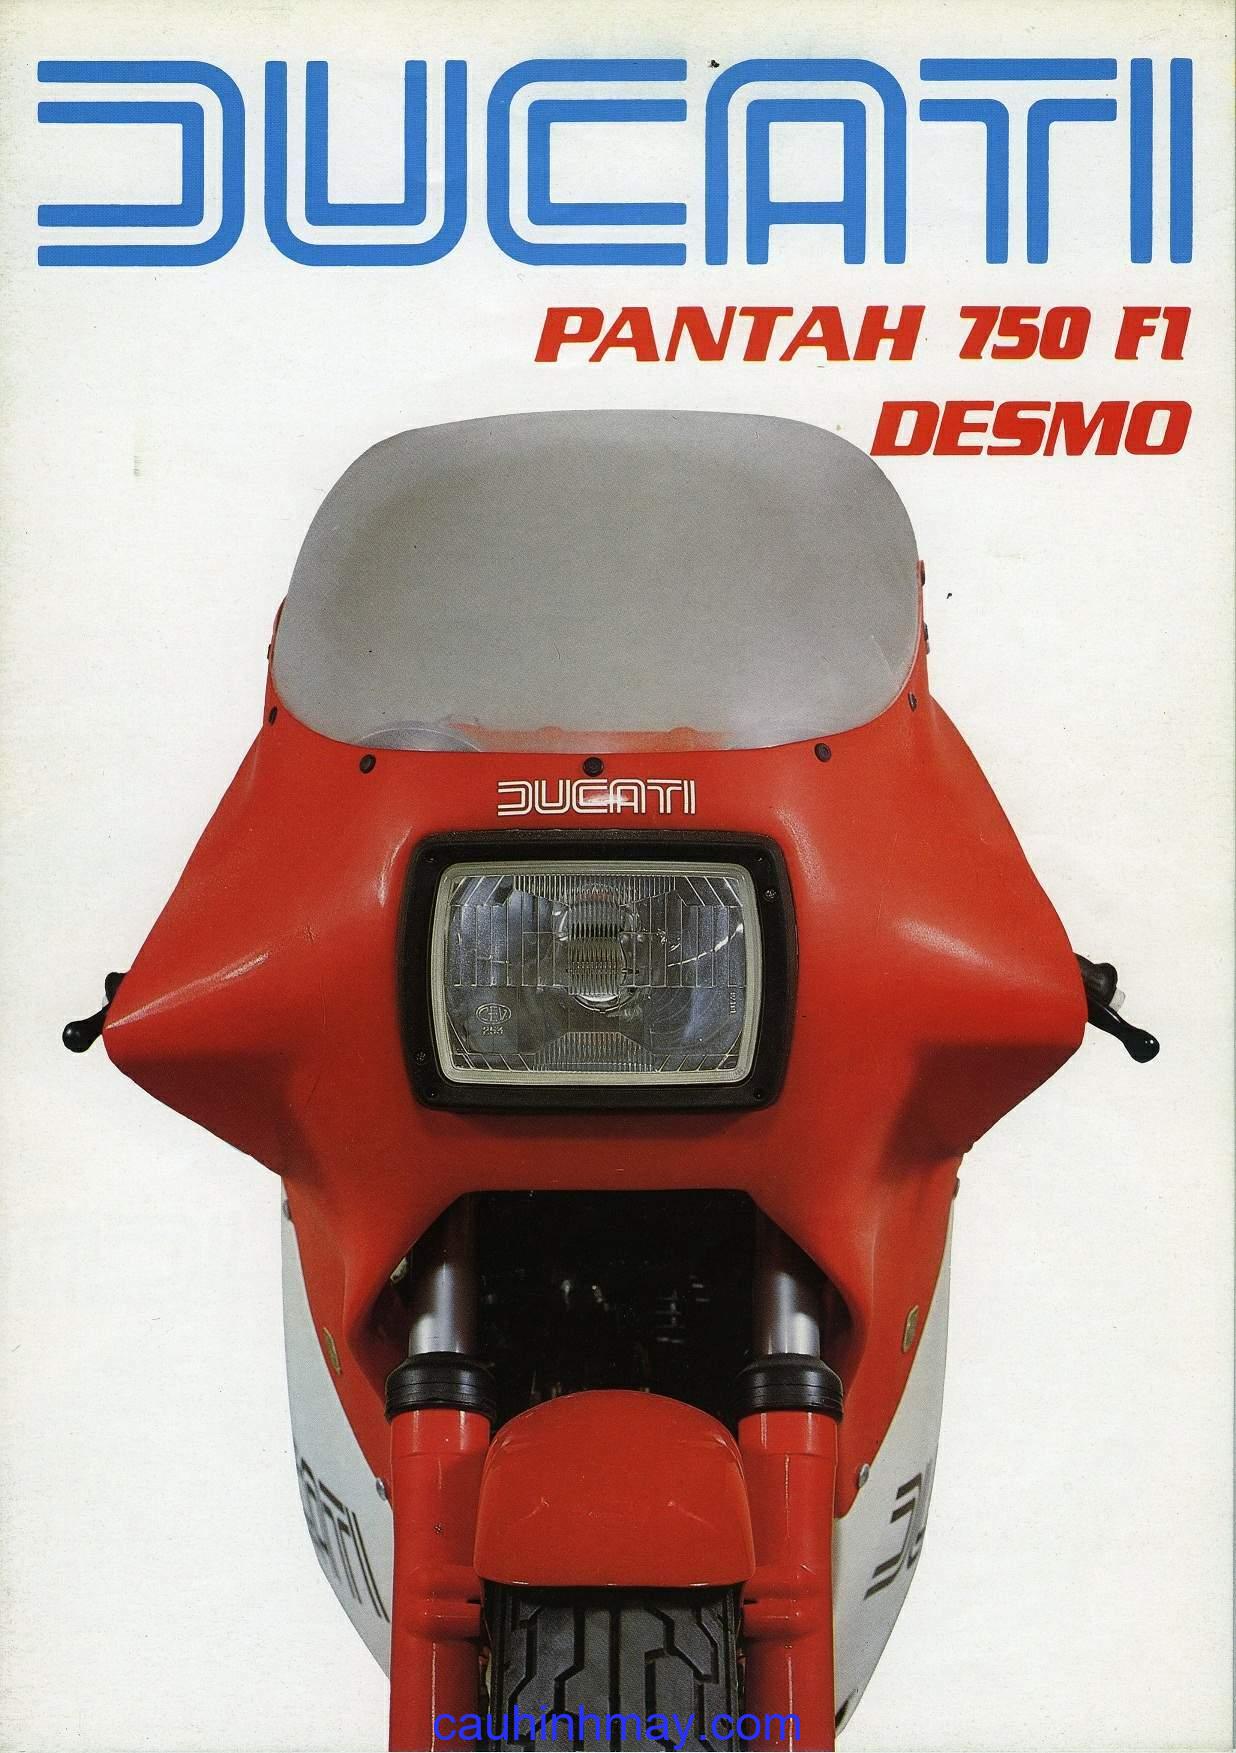 DUCATI 750 F1 PANTAH DESMO - cauhinhmay.com